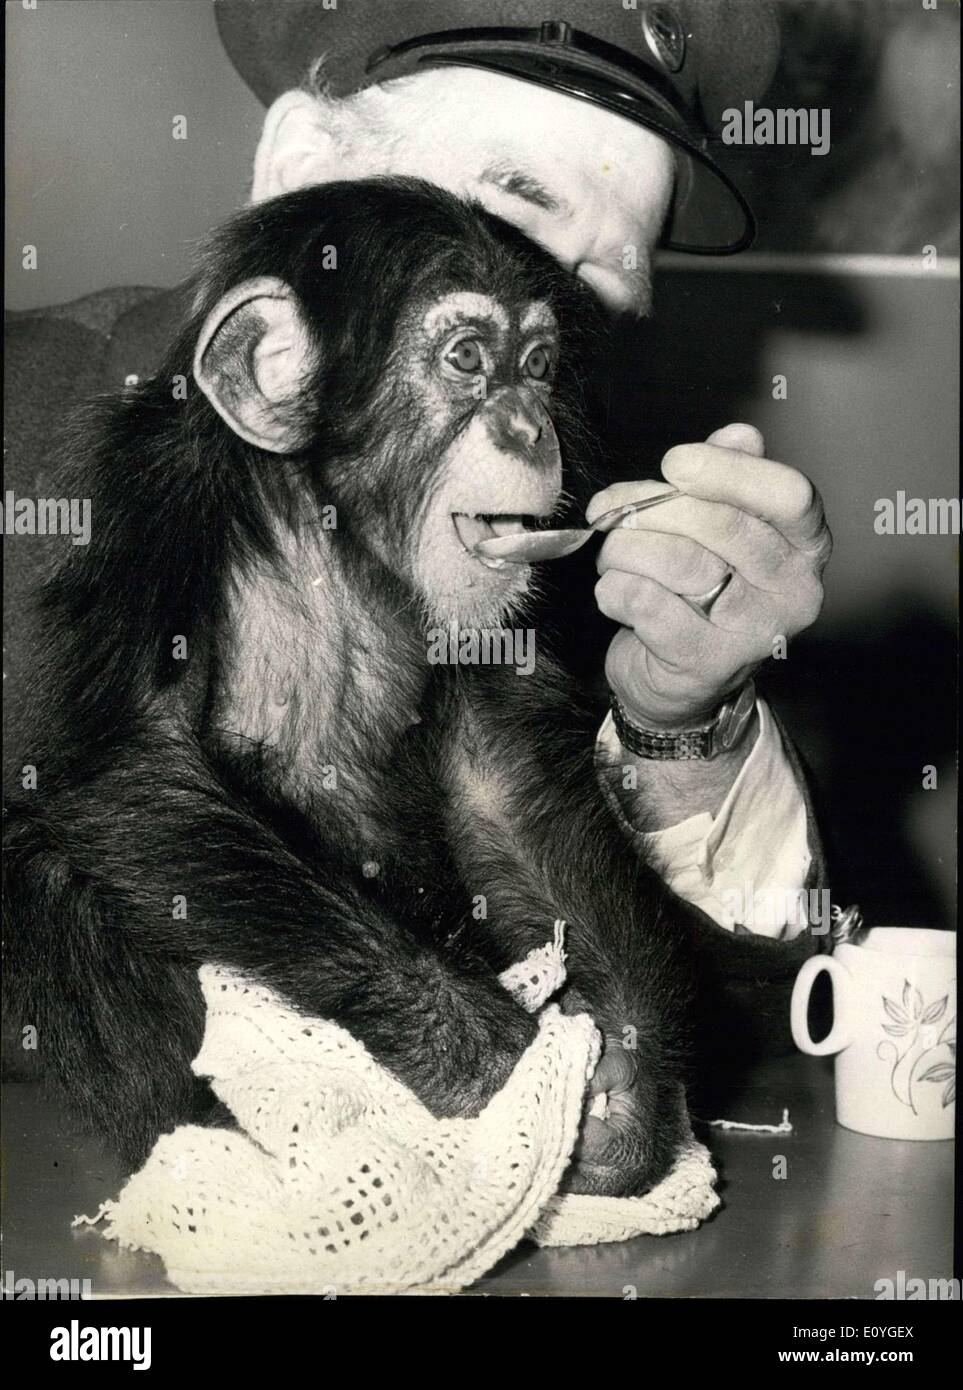 Apr. 08, 1970 - Cameron la scimpanzé incontra il suo pubblico.: 'Cameron' il scimpanzé, incontra il suo pubblico per la prima volta oggi presso lo zoo di Londra. Abbandonato da sua madre Fifi, il giorno era nato, sette mesi Cameron è stata mano-allevati dalla Sig.ra Patricia Brambell, moglie del curatore dei mammiferi. Per tre mesi ha condiviso la vita familiare della famiglia Brambell, avente quattro-feed oraria come qualsiasi bambino umano. A tre mesi Cameron è andato alla scuola materna, nella casa di scimmia dove essendo anche accuditi dalla scimmia custodi della casa Foto Stock